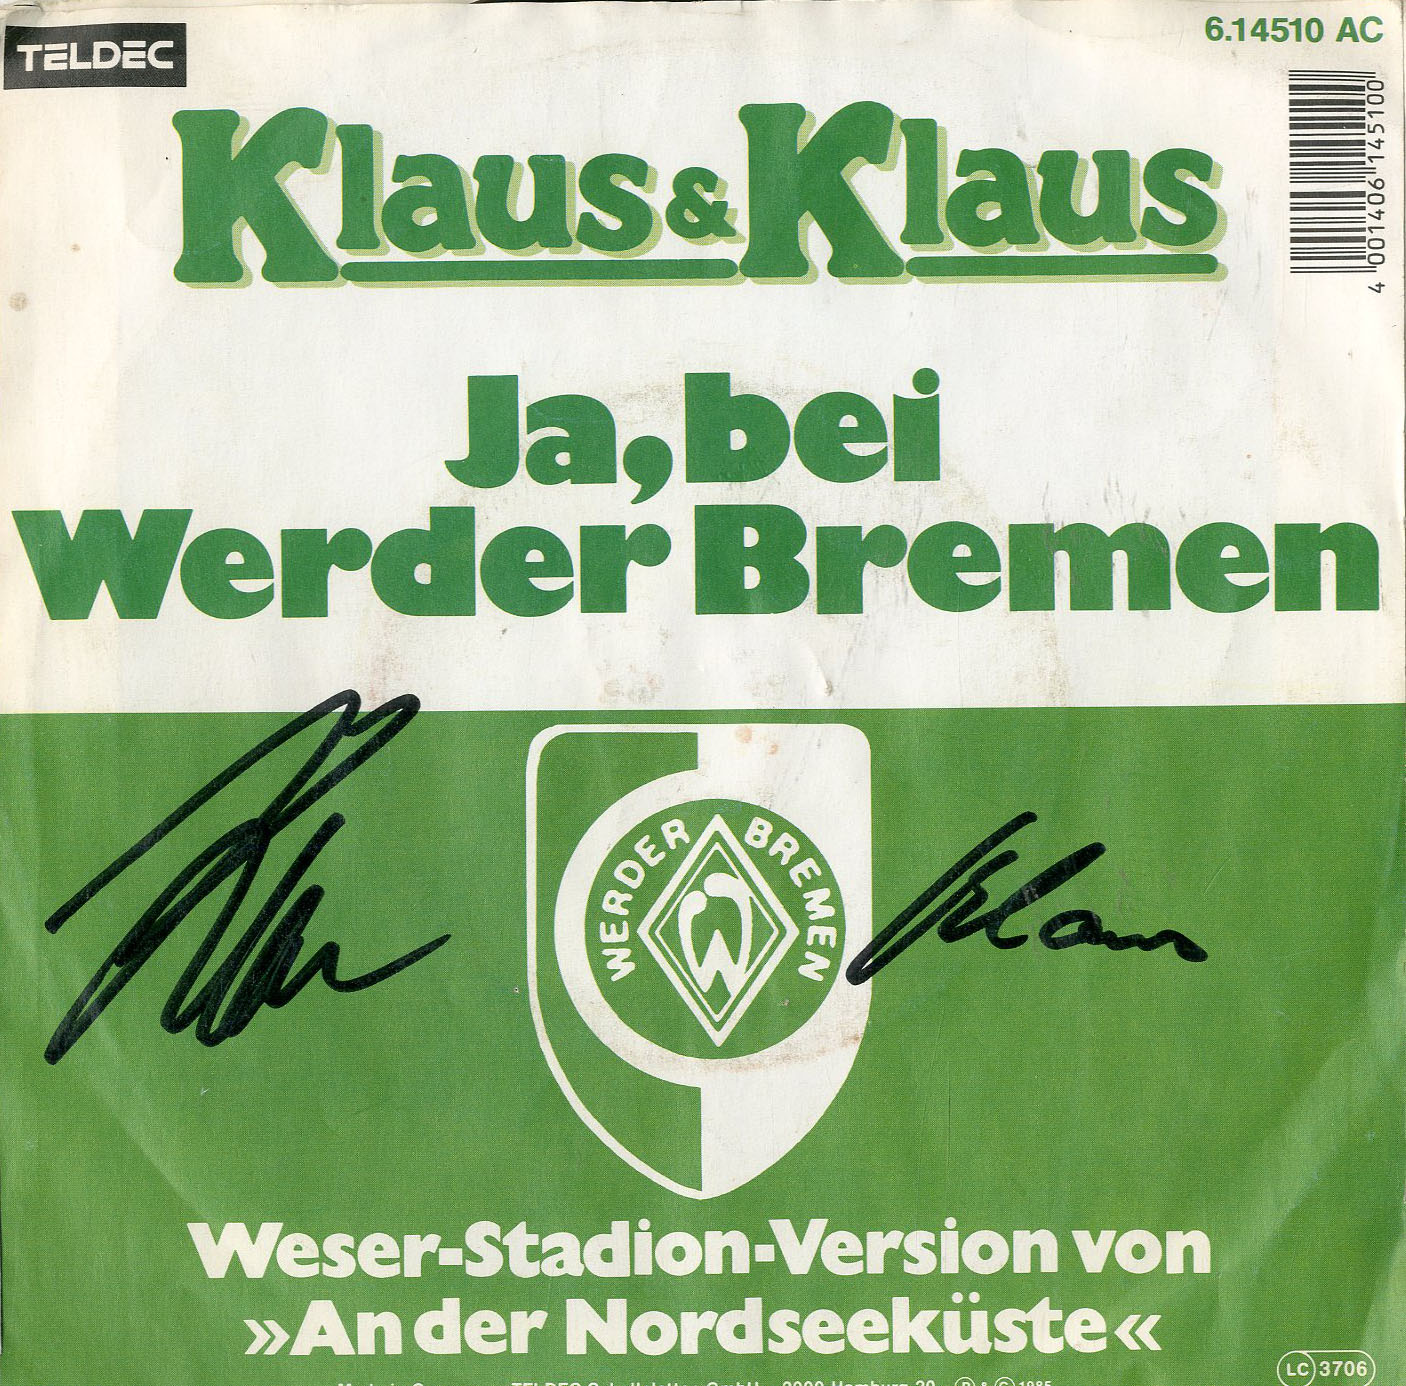 Albumcover Klaus & Klaus - Ja bei Werder Bremen (Weserstadion-Version von An der Nordseeküste / Banane Du bist fällig<br> MIT AUTOGRAMM